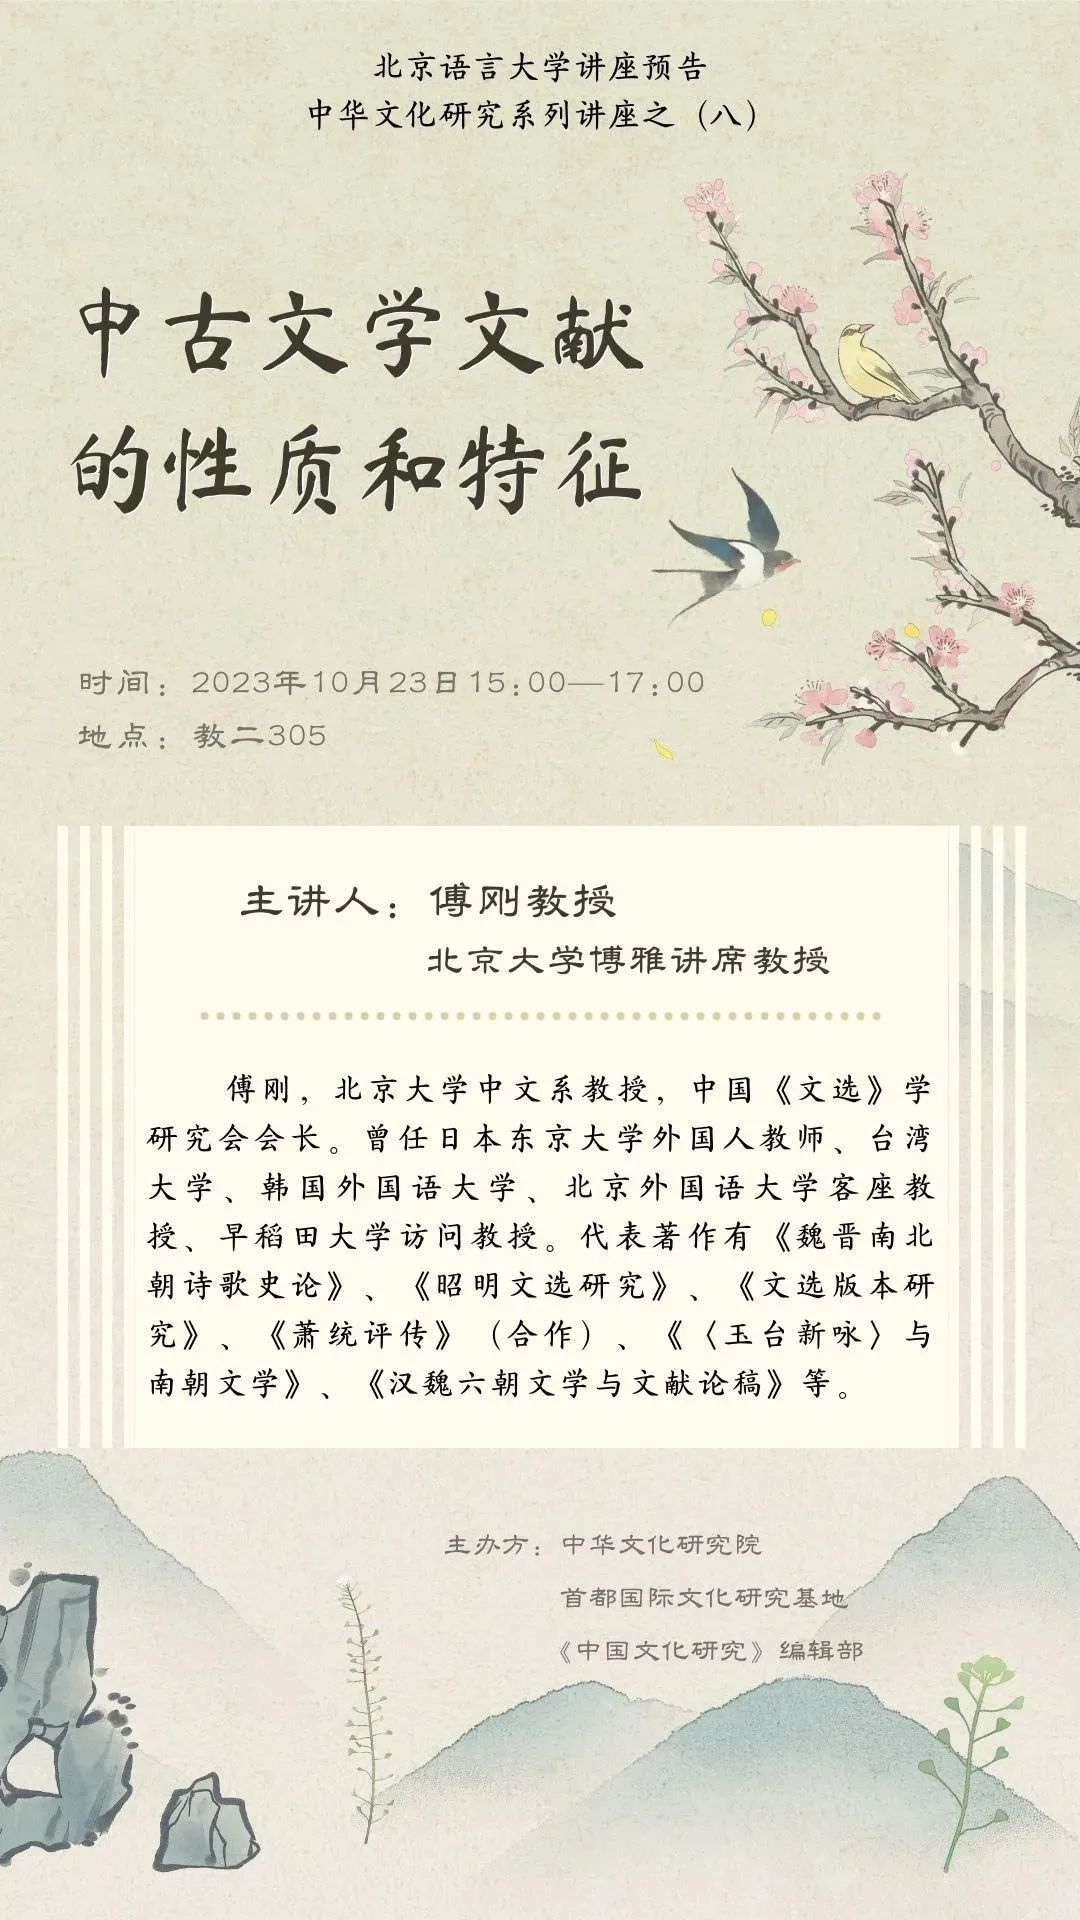 中华文化研究院通知公告讲座预告｜中古文学文献的性质和特征